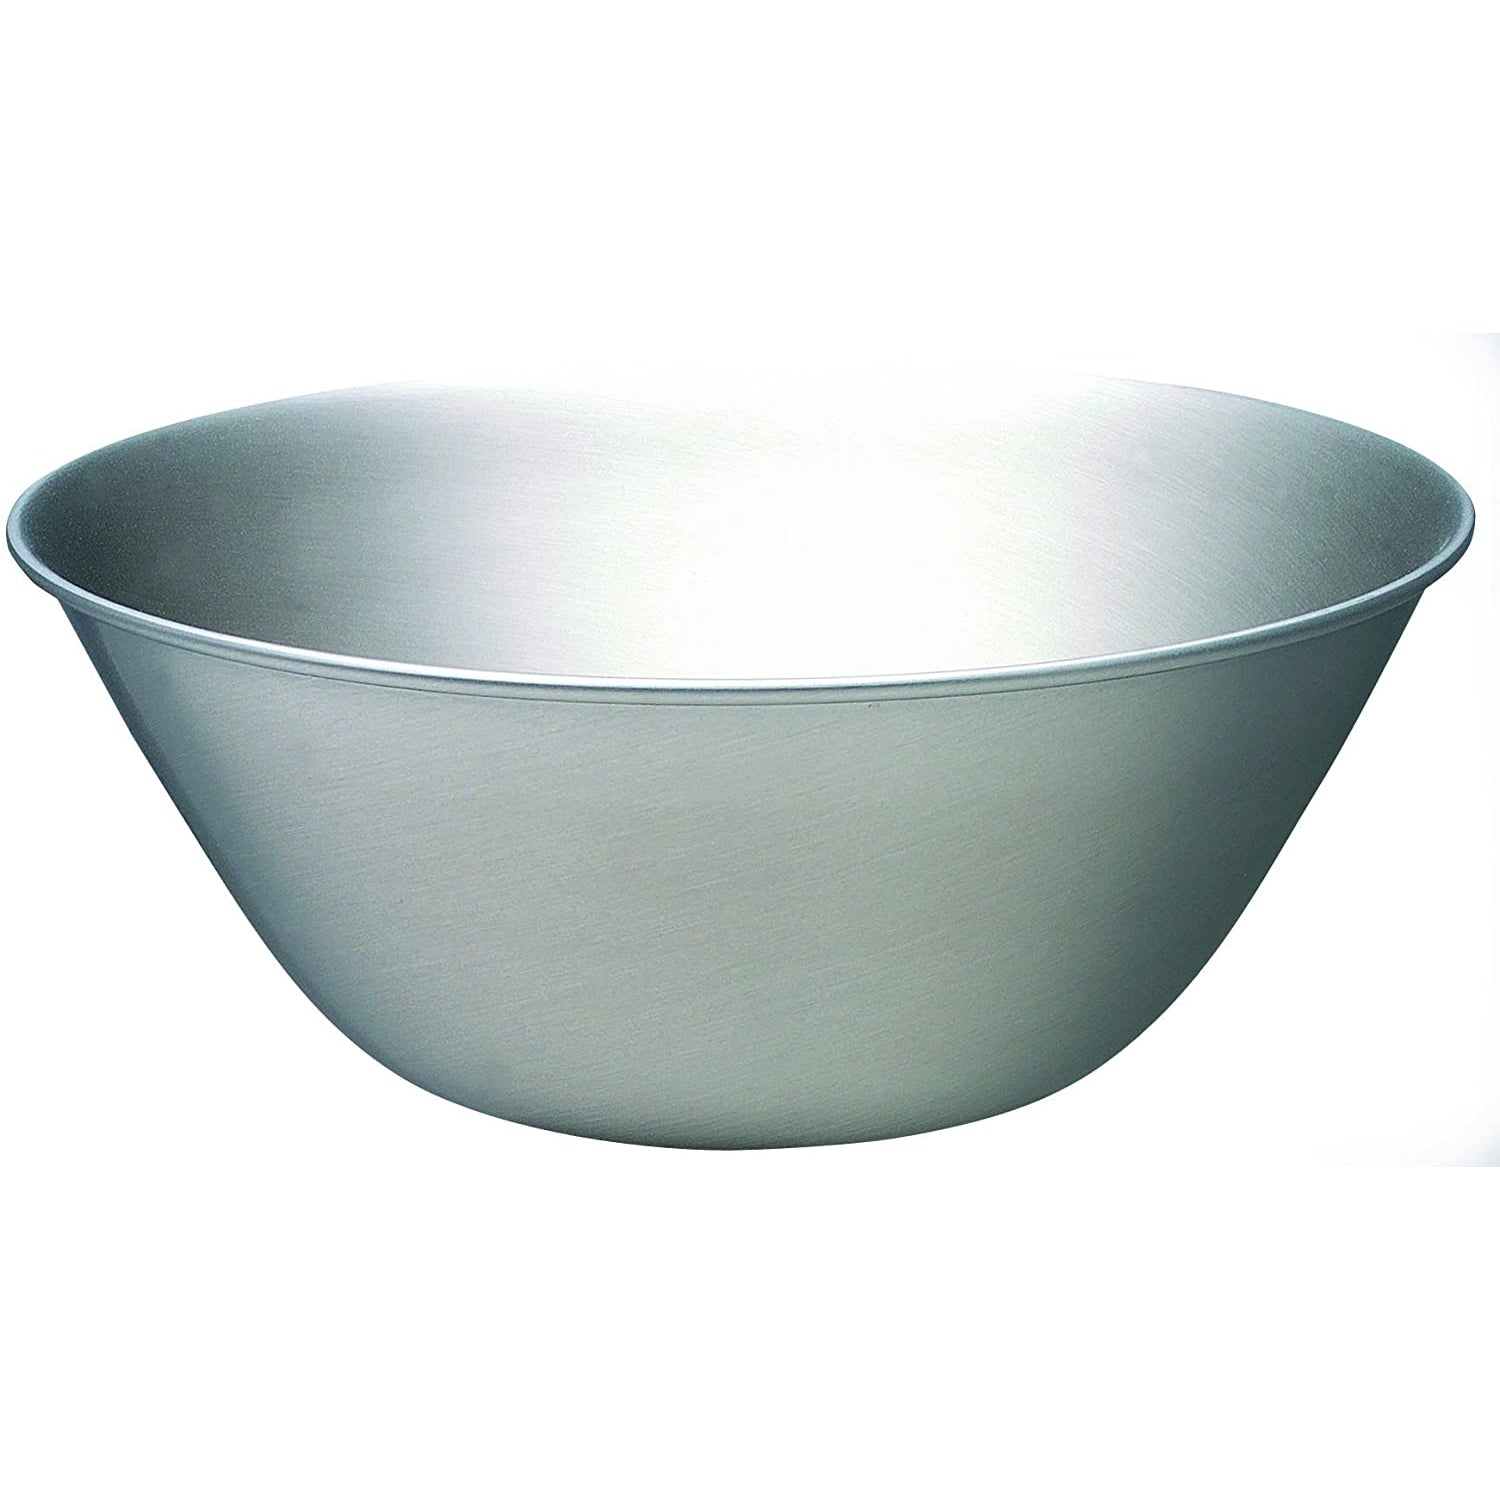 Sori Yanagi Stainless Steel Mixing Bowl